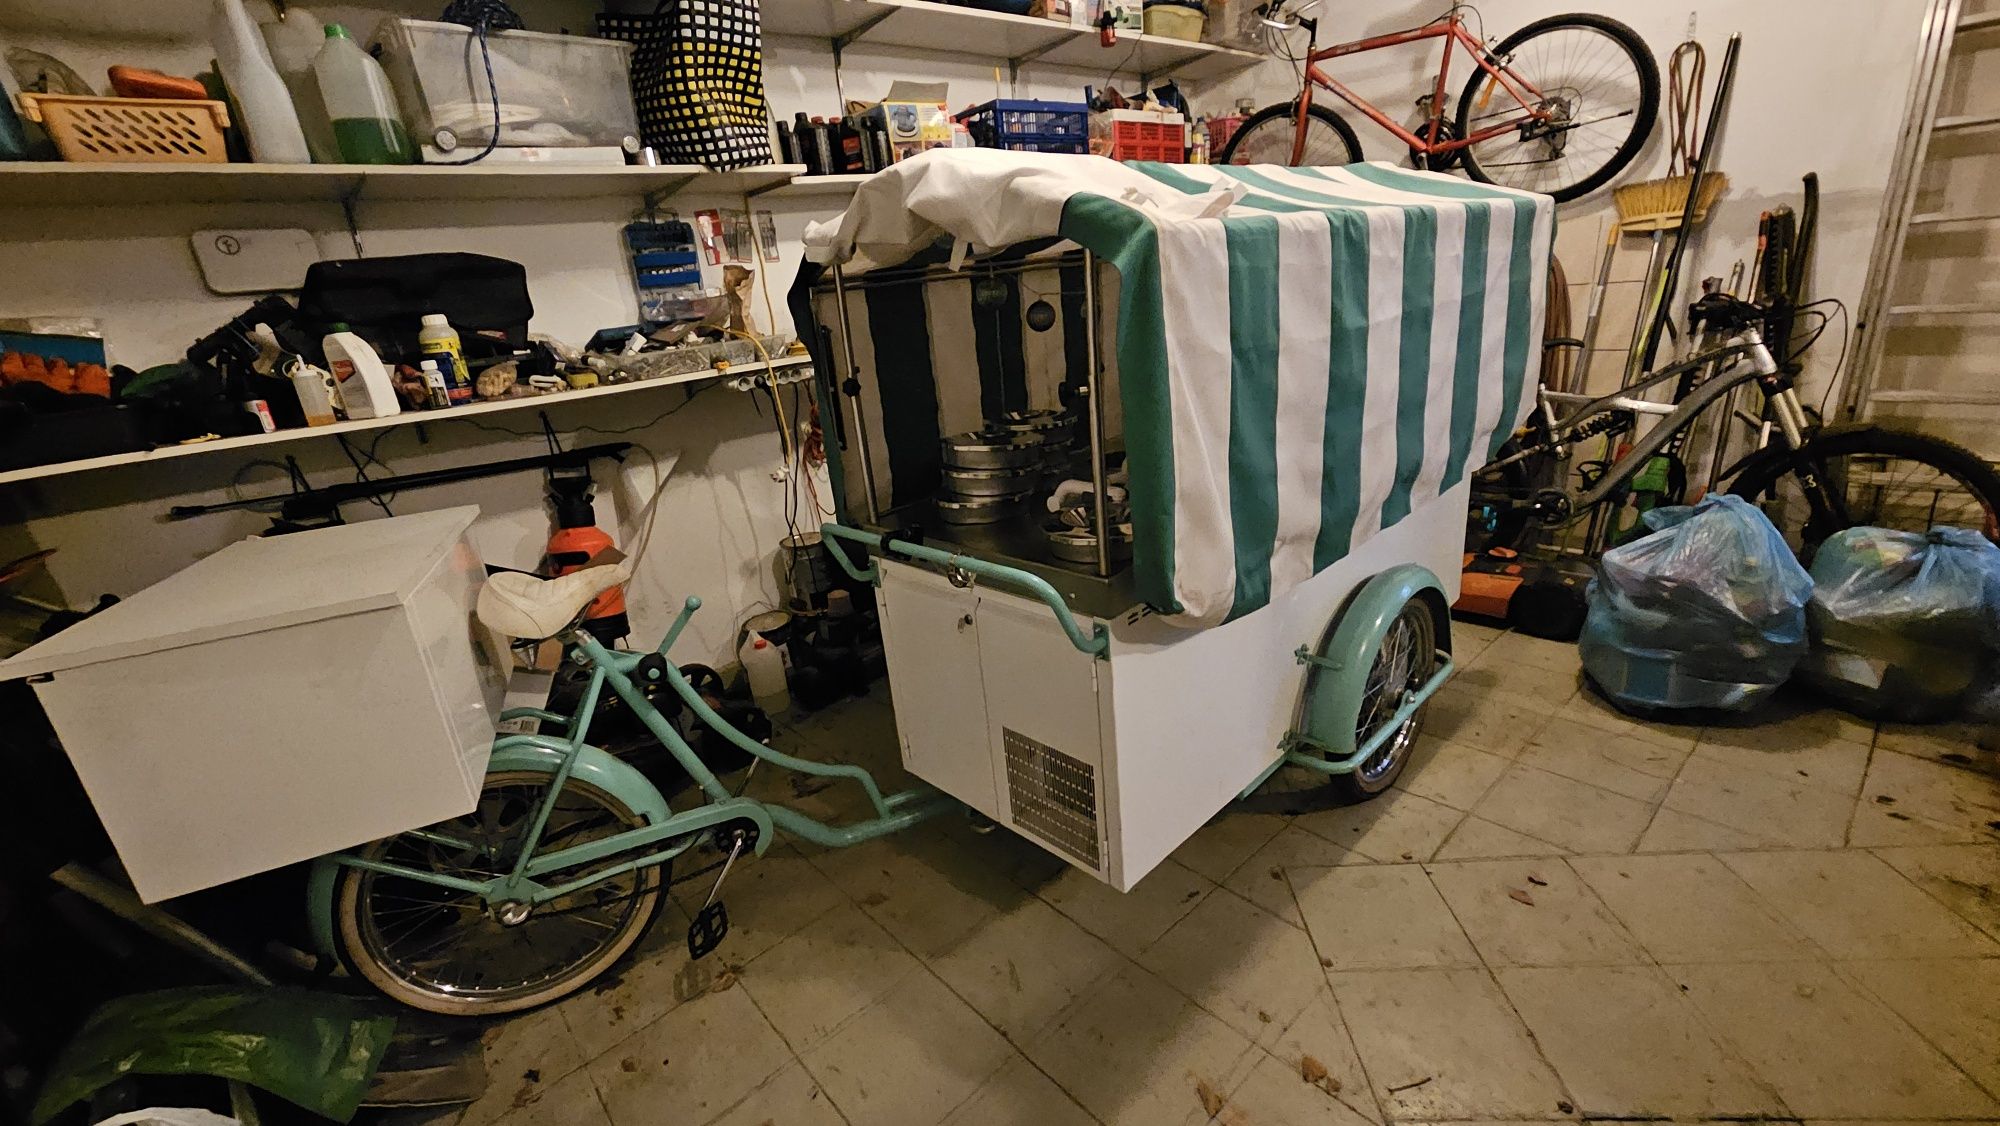 Riksza rower wózek do lodów